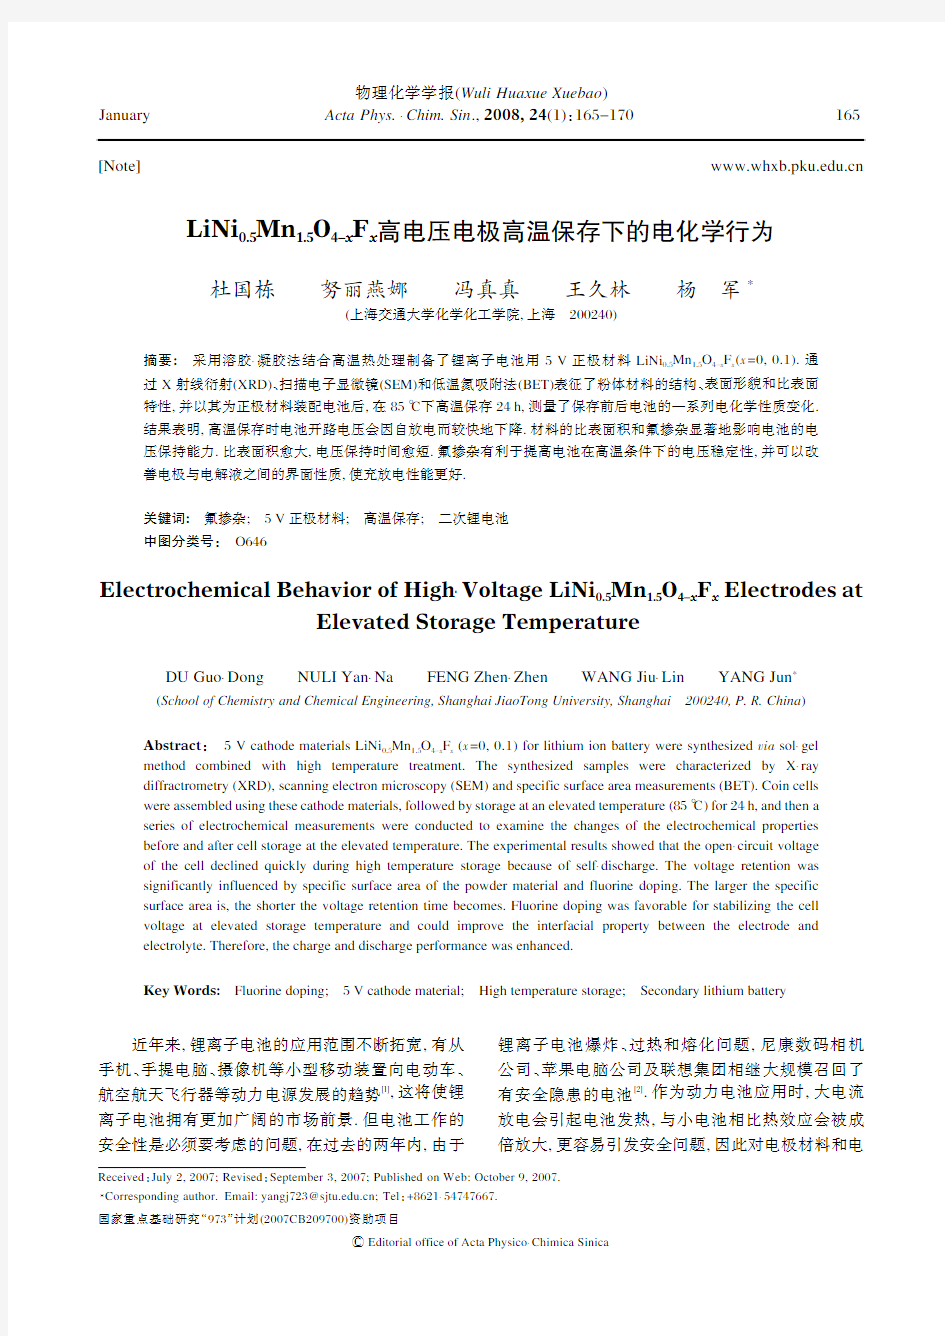 LiNi0.5Mn 1.5O4-xFx高电压电极高温保存下的电化学行为